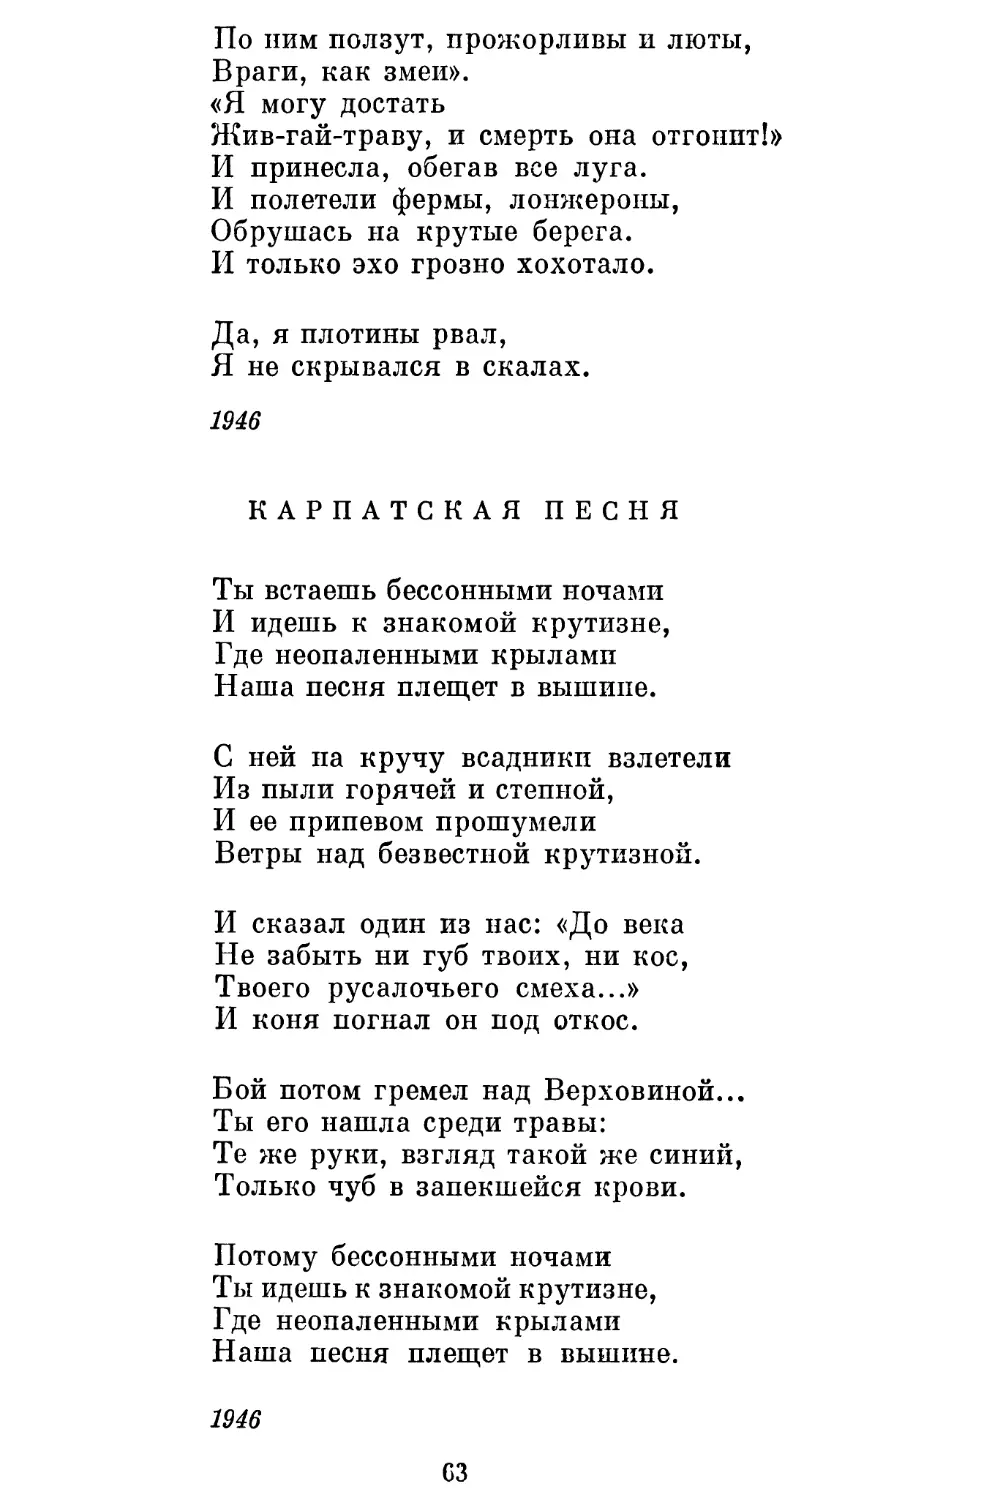 Карпатская песня. Перевод С. Наровчатова